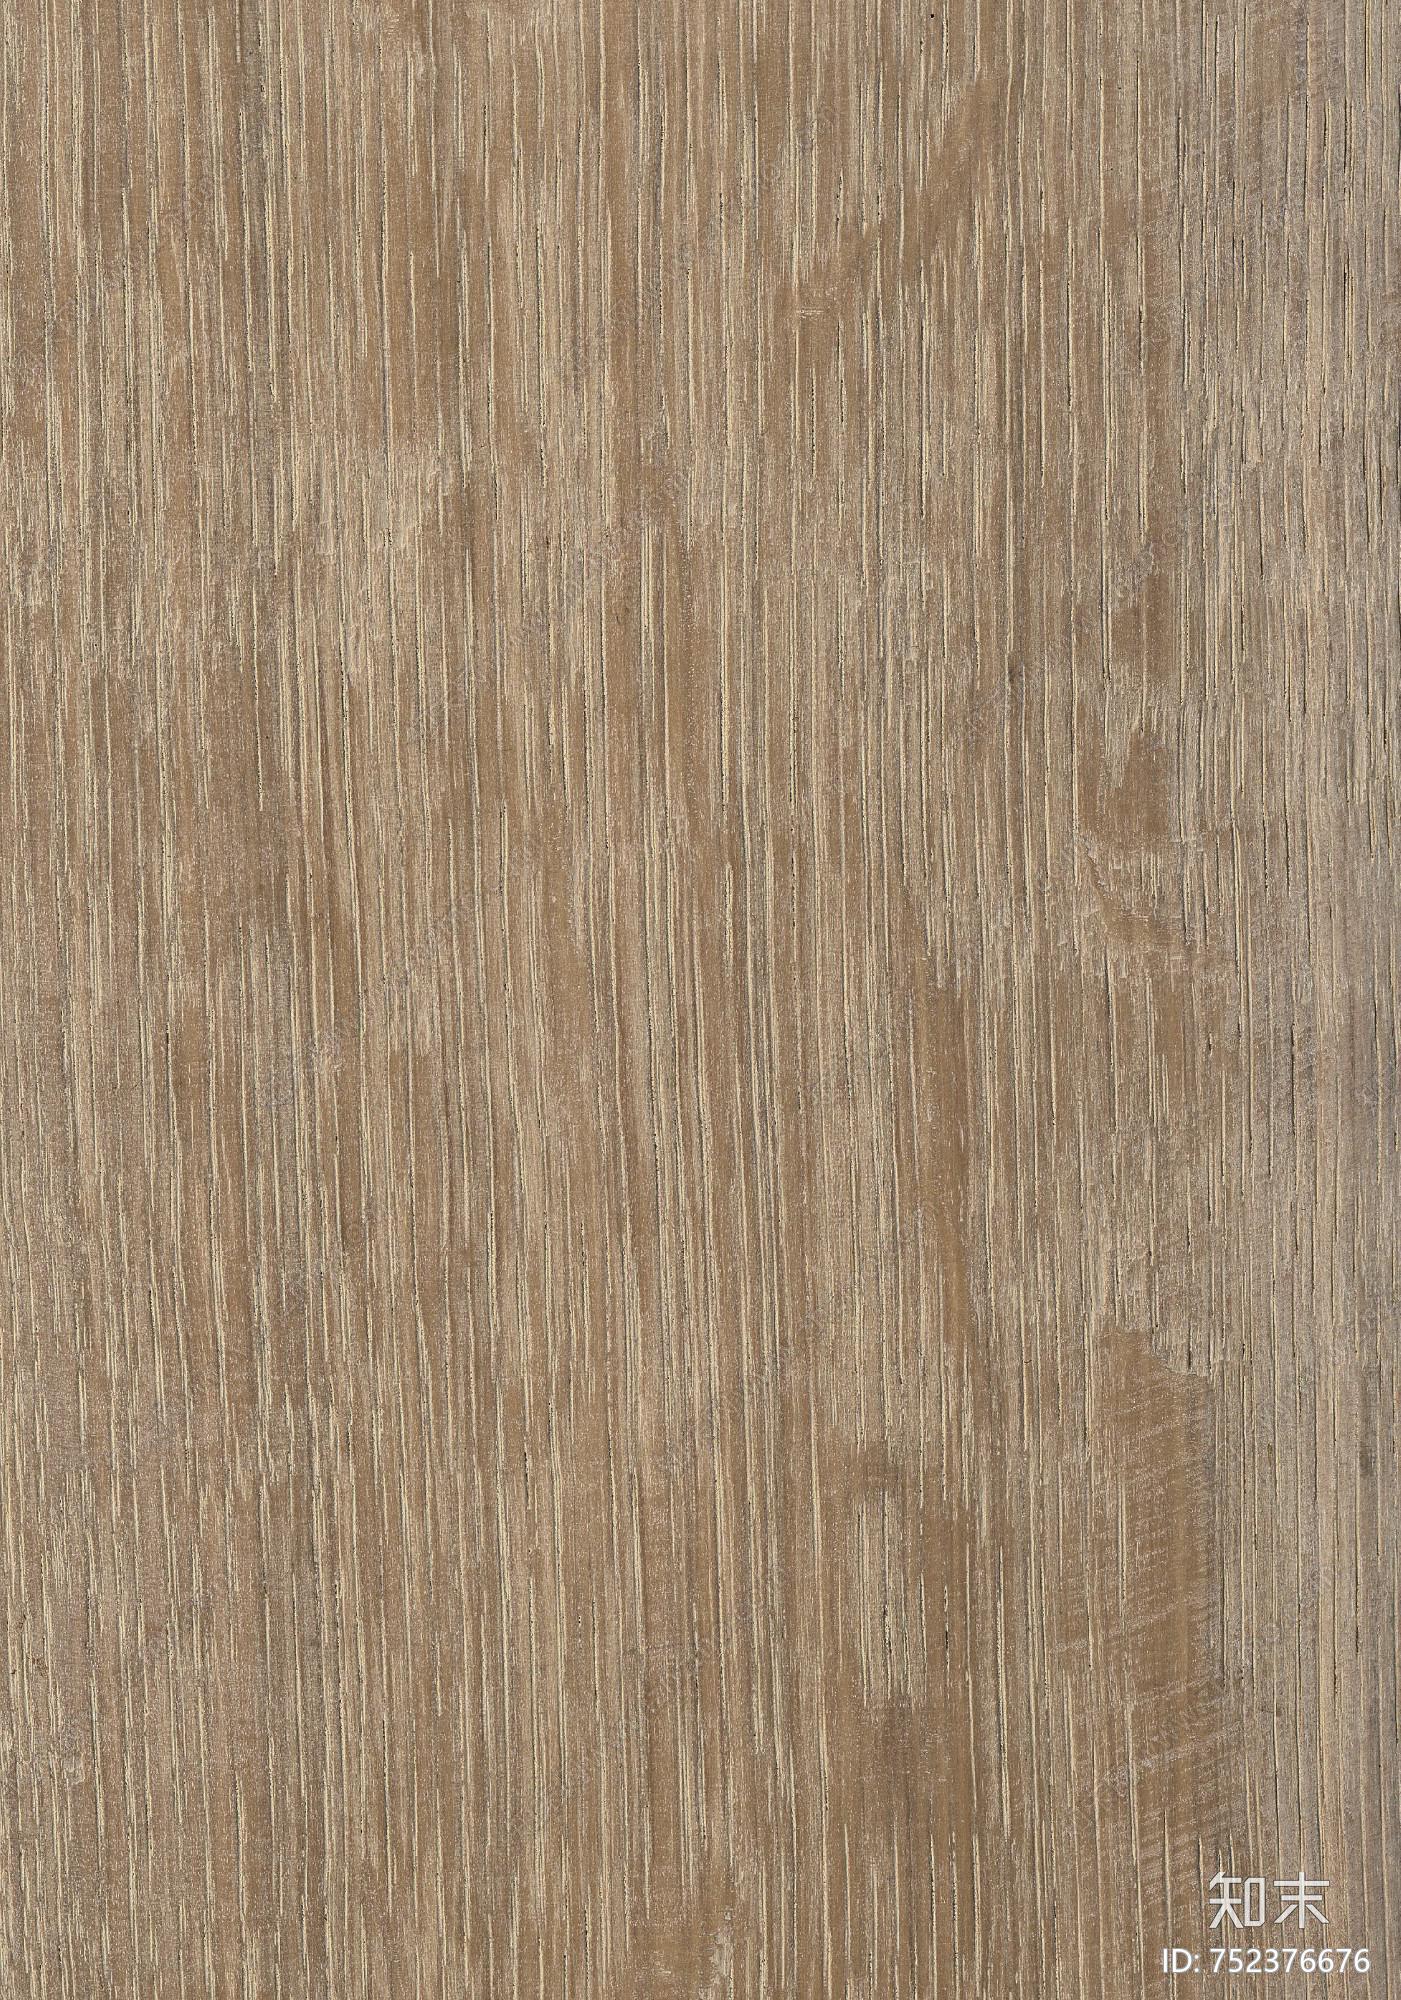 灰木纹木纹木饰面贴图深灰色木纹护墙板高清木纹贴图 木饰面板贴图